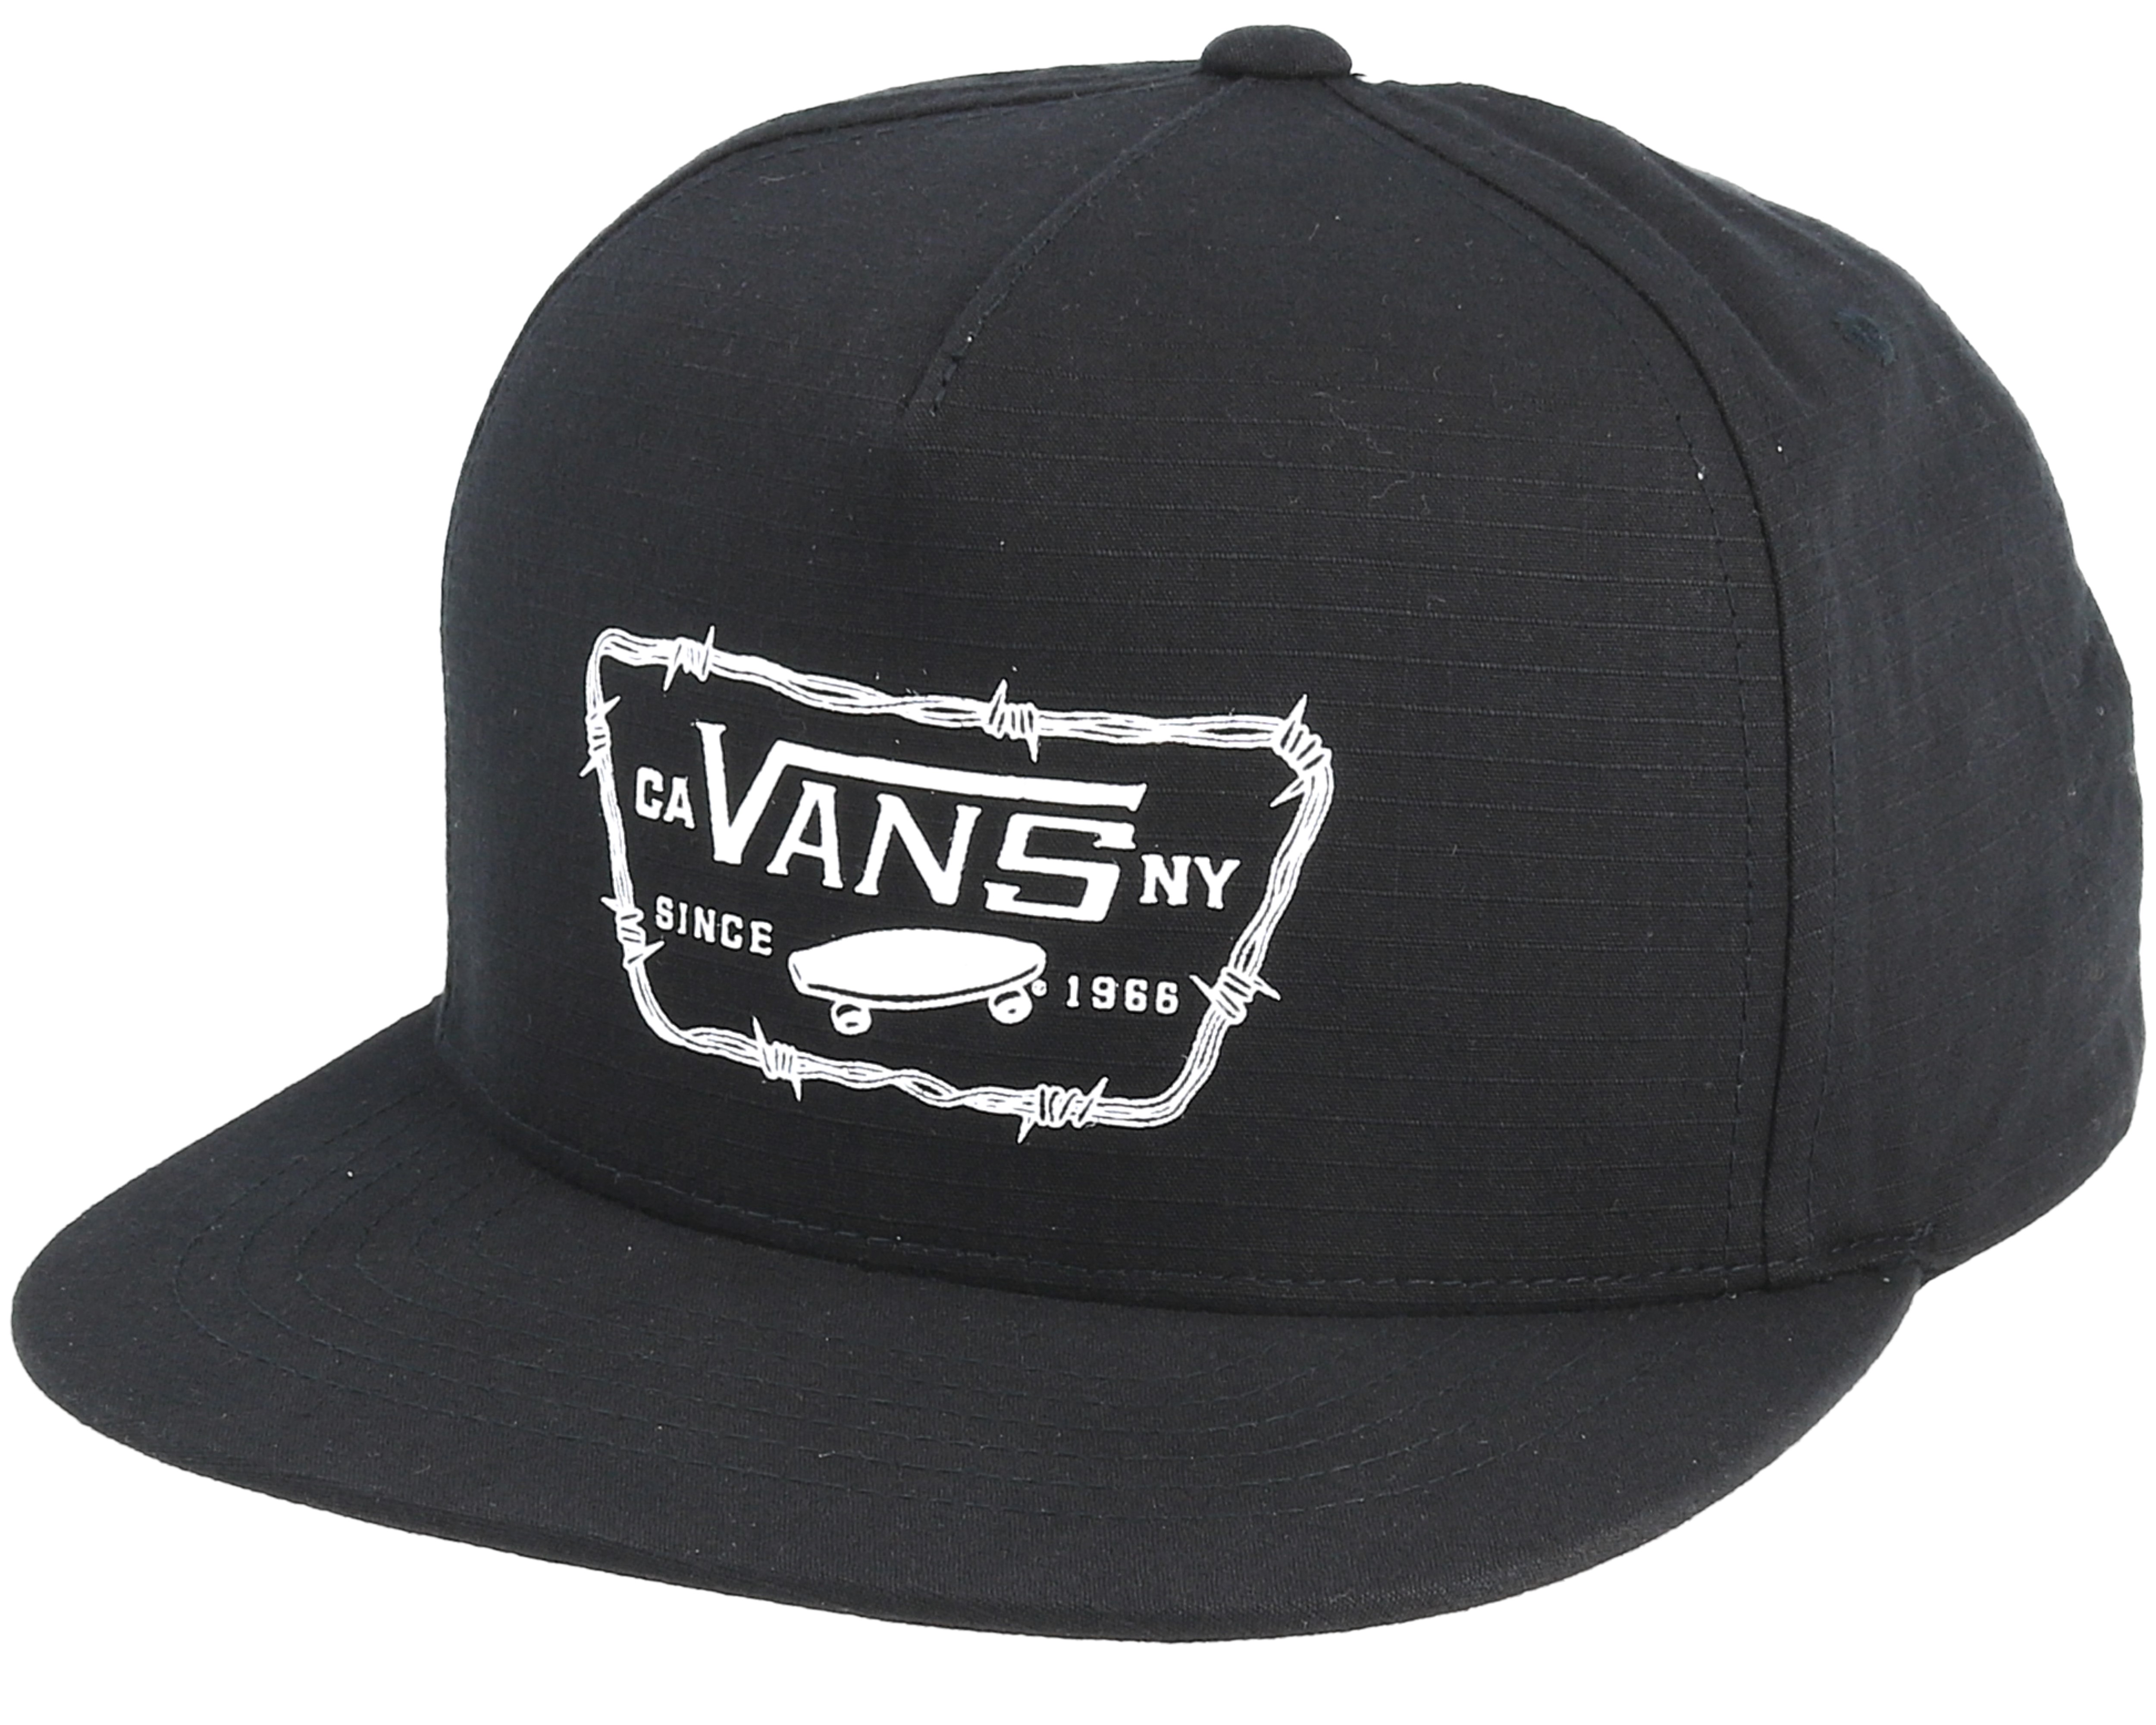 Drop V II Black cap Snapback - Vans